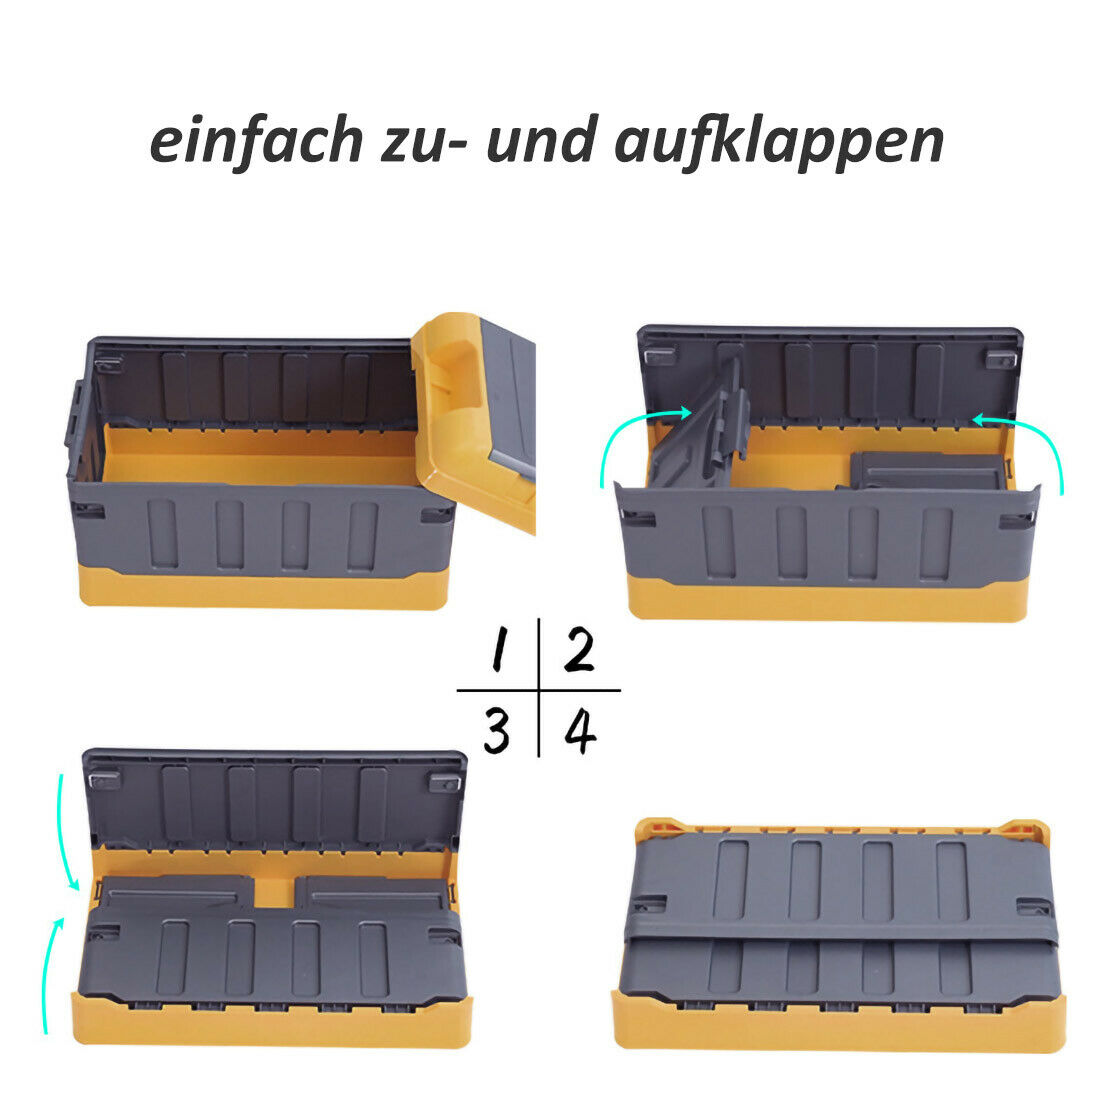 Premium faltbare Aufbewahrungsbox mit Deckel Faltbox Box Klapp Kiste KFZ Reise Blau Groß mit flachem Deckel